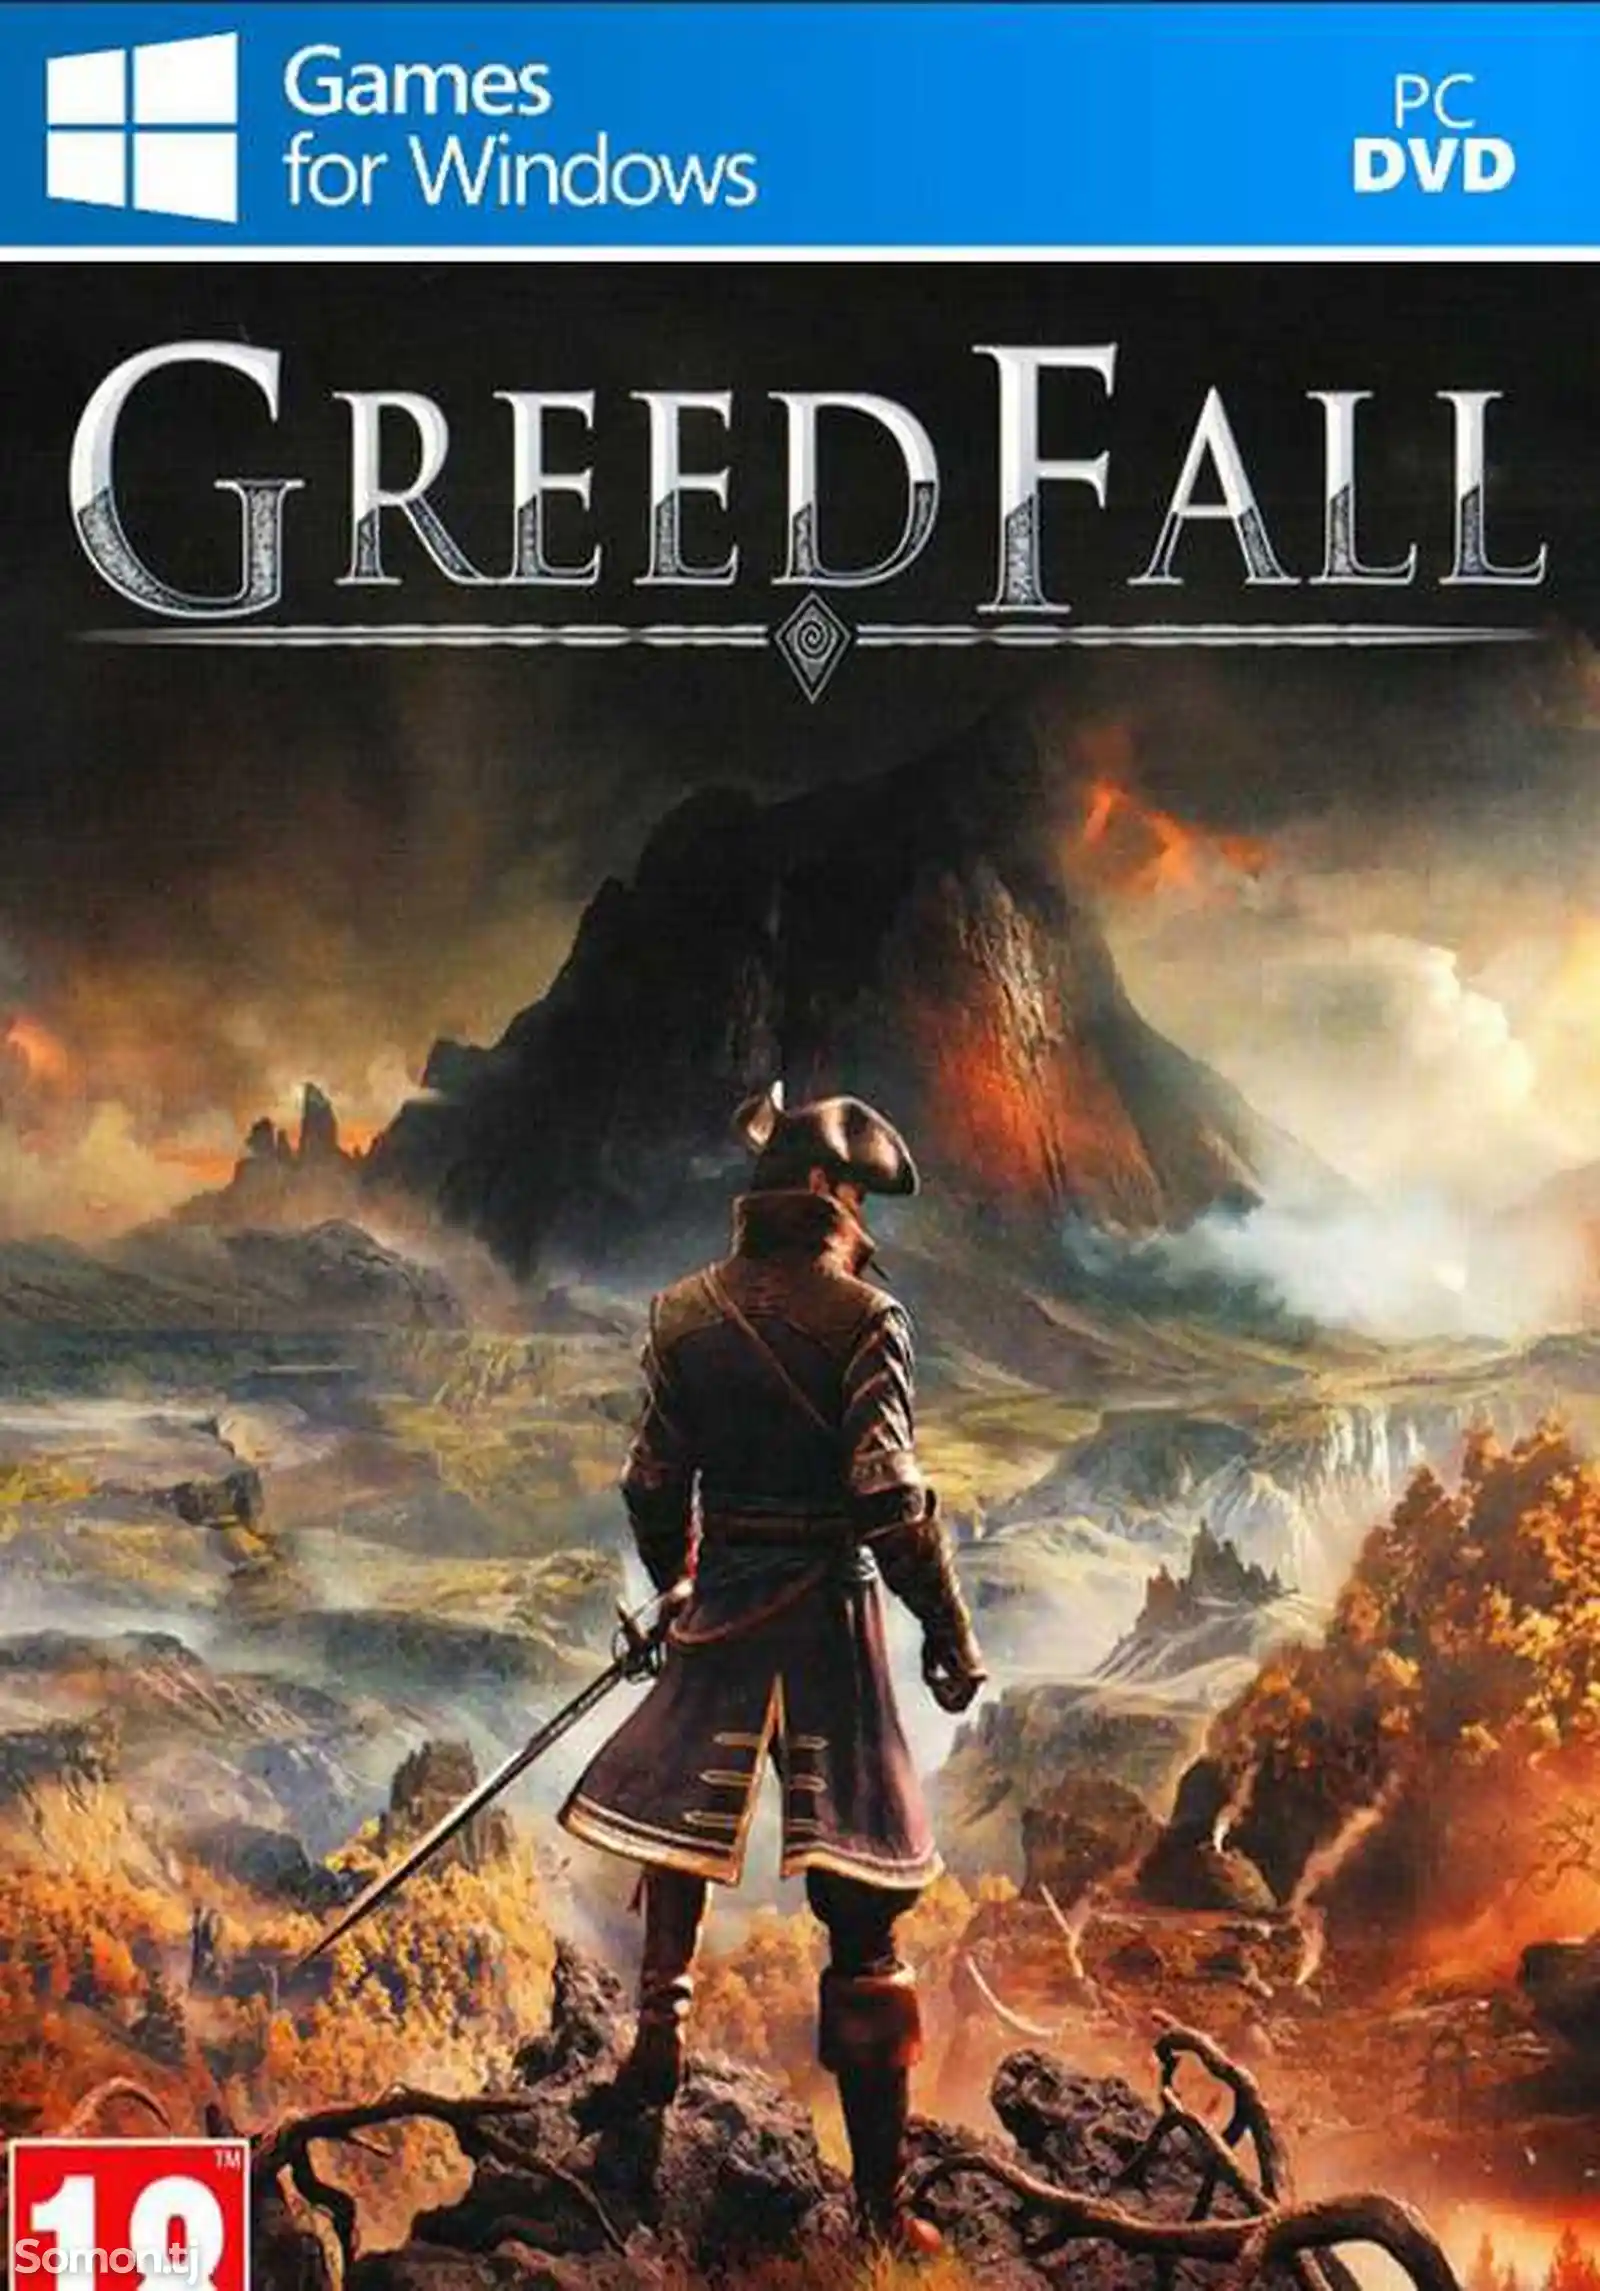 Игра Greed fall для компьютера-пк-pc-1